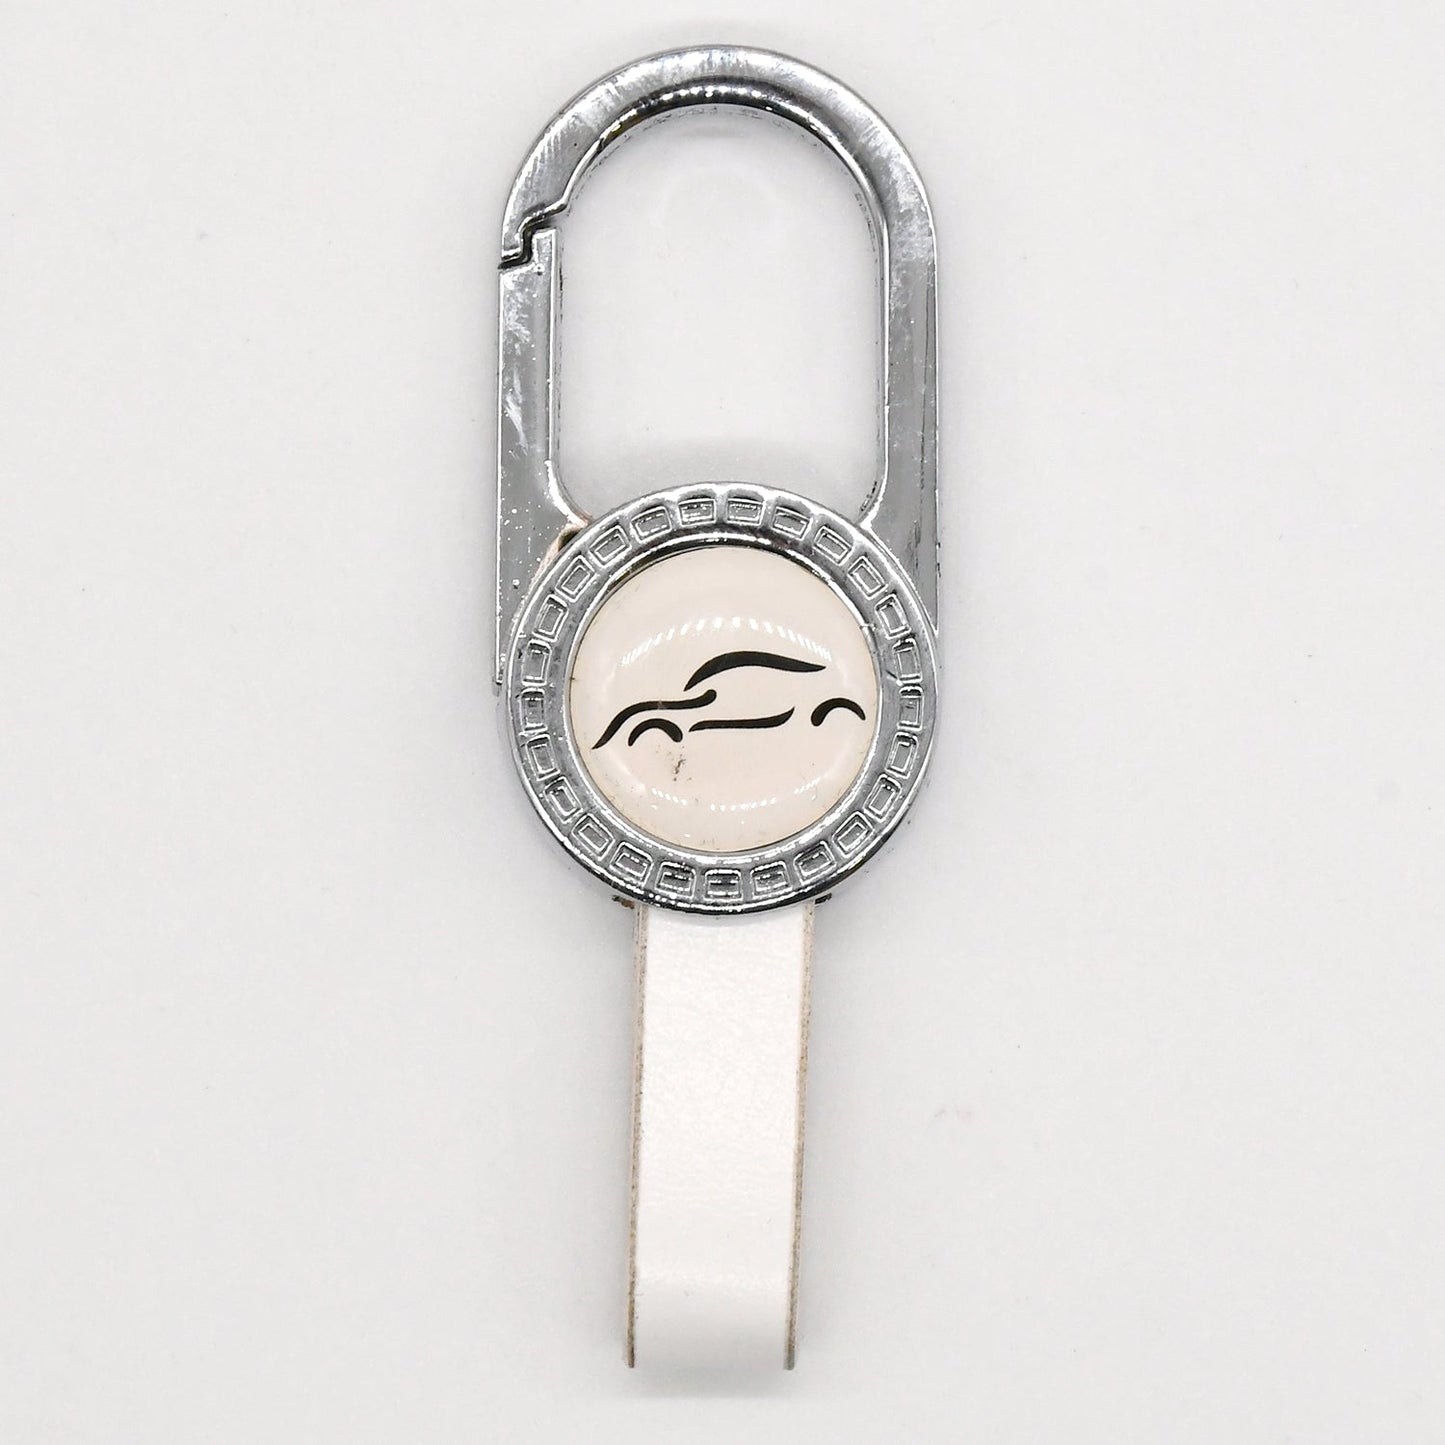 
                  
                    KMH Alluminium Key Chain-Silver White-KEY CHAIN-KMH-CARPLUS
                  
                